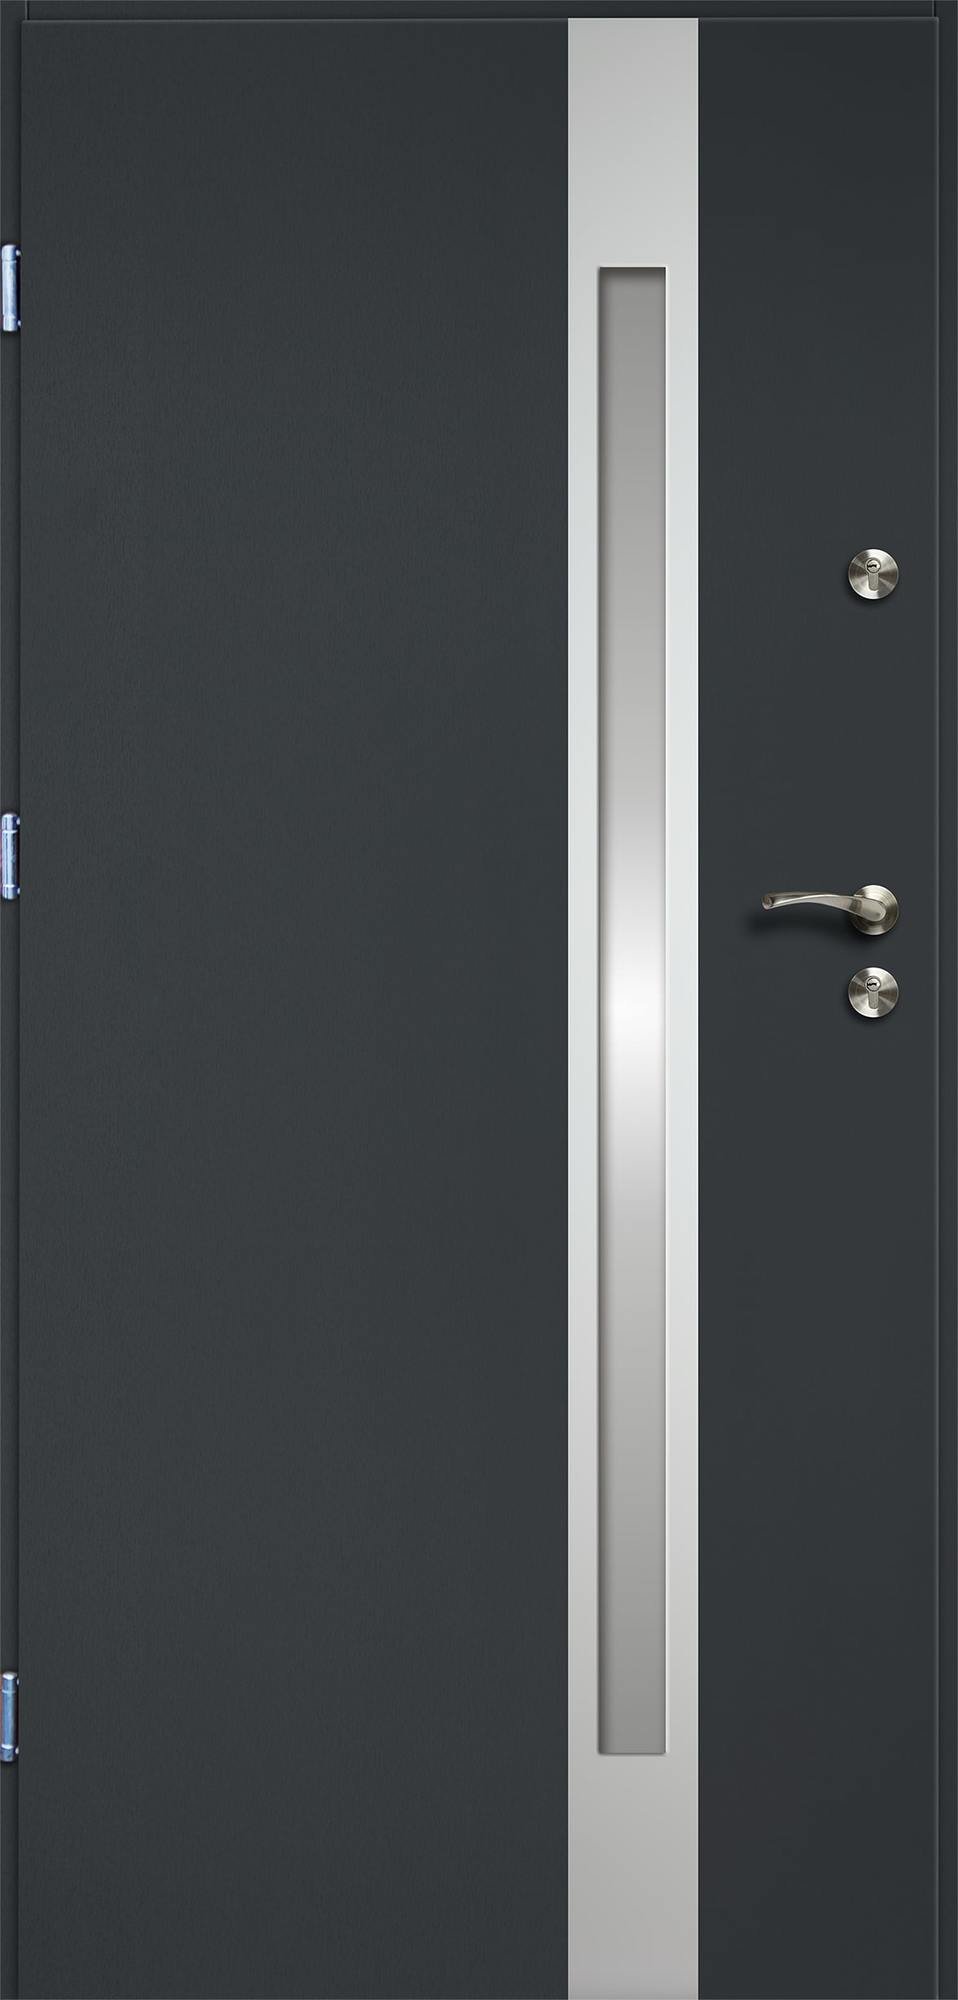 Lauko durys RADEX VERTE II, antracito sp., 900 x 2070 mm, kairė - 2vnt - 1